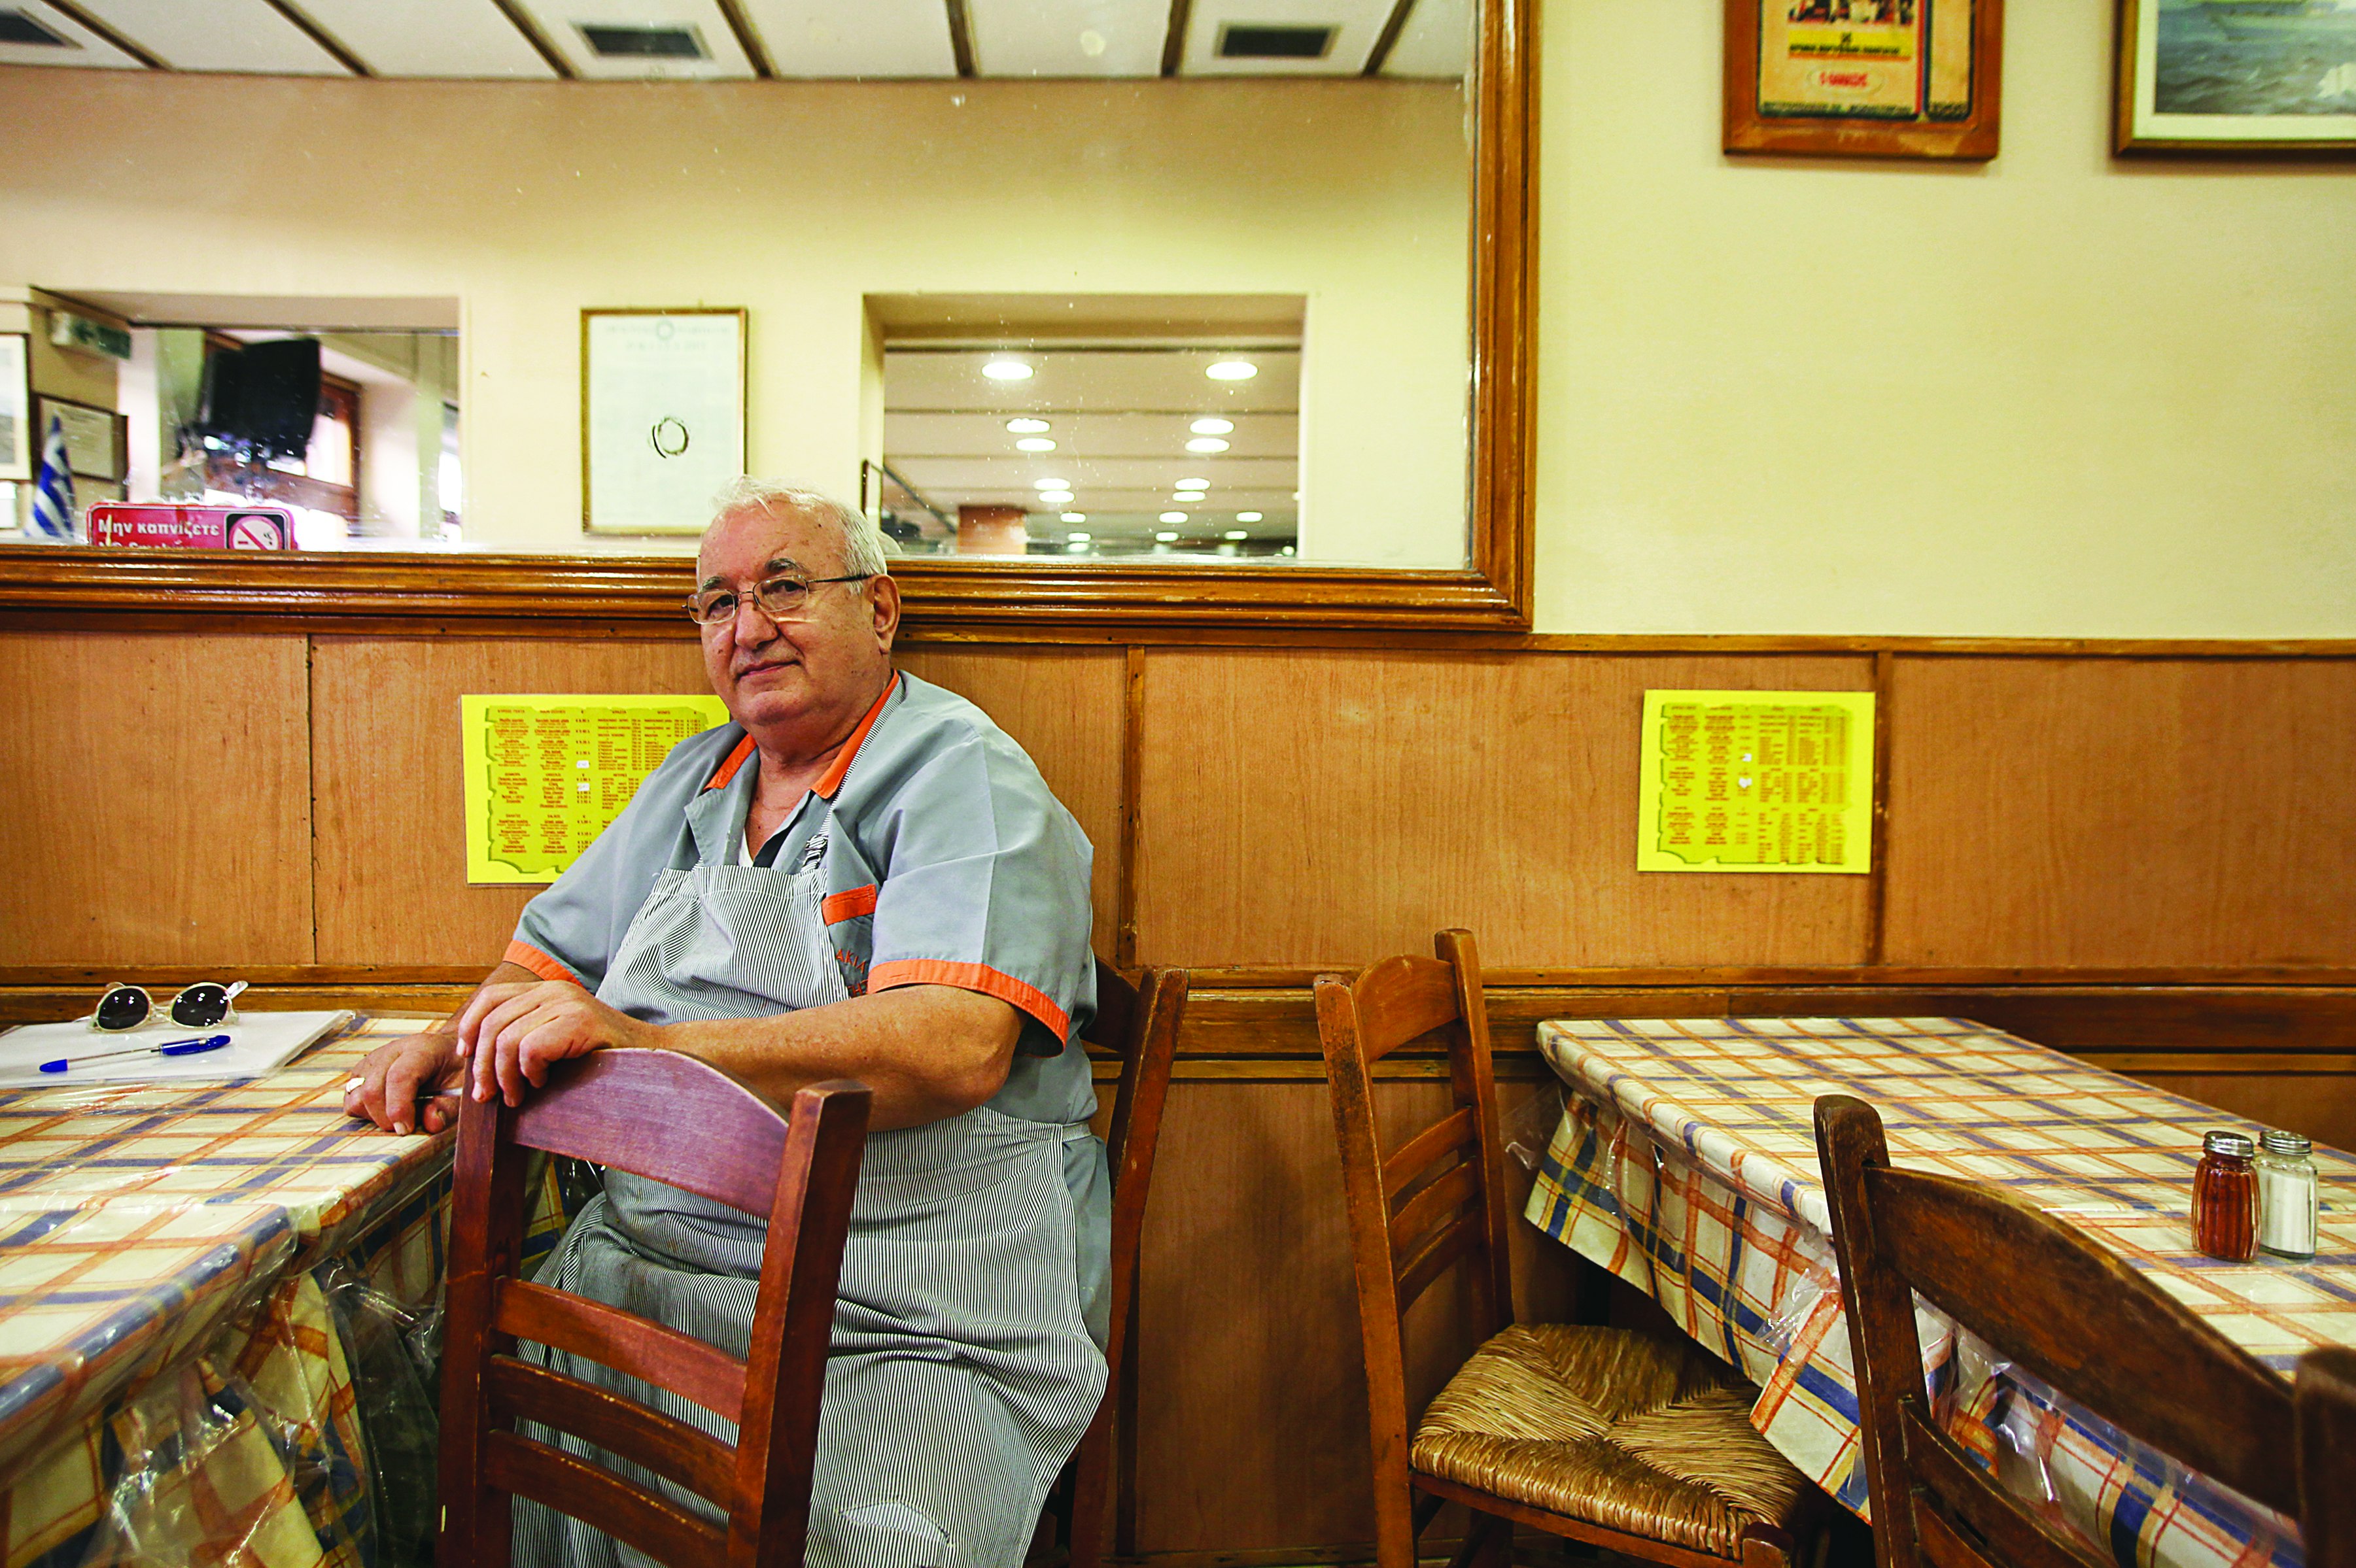 Ägaren till restaurang Thanasis sitter vid ett av borden, som är täckta av blå och orange rutiga kläder täckta av klar plast.  Han är klädd i en ljusblå kockskjorta med orange kant på ärmar och krage.  Väggarna är panelade i trä och faner, vilket försäkrar restaurangens ålder